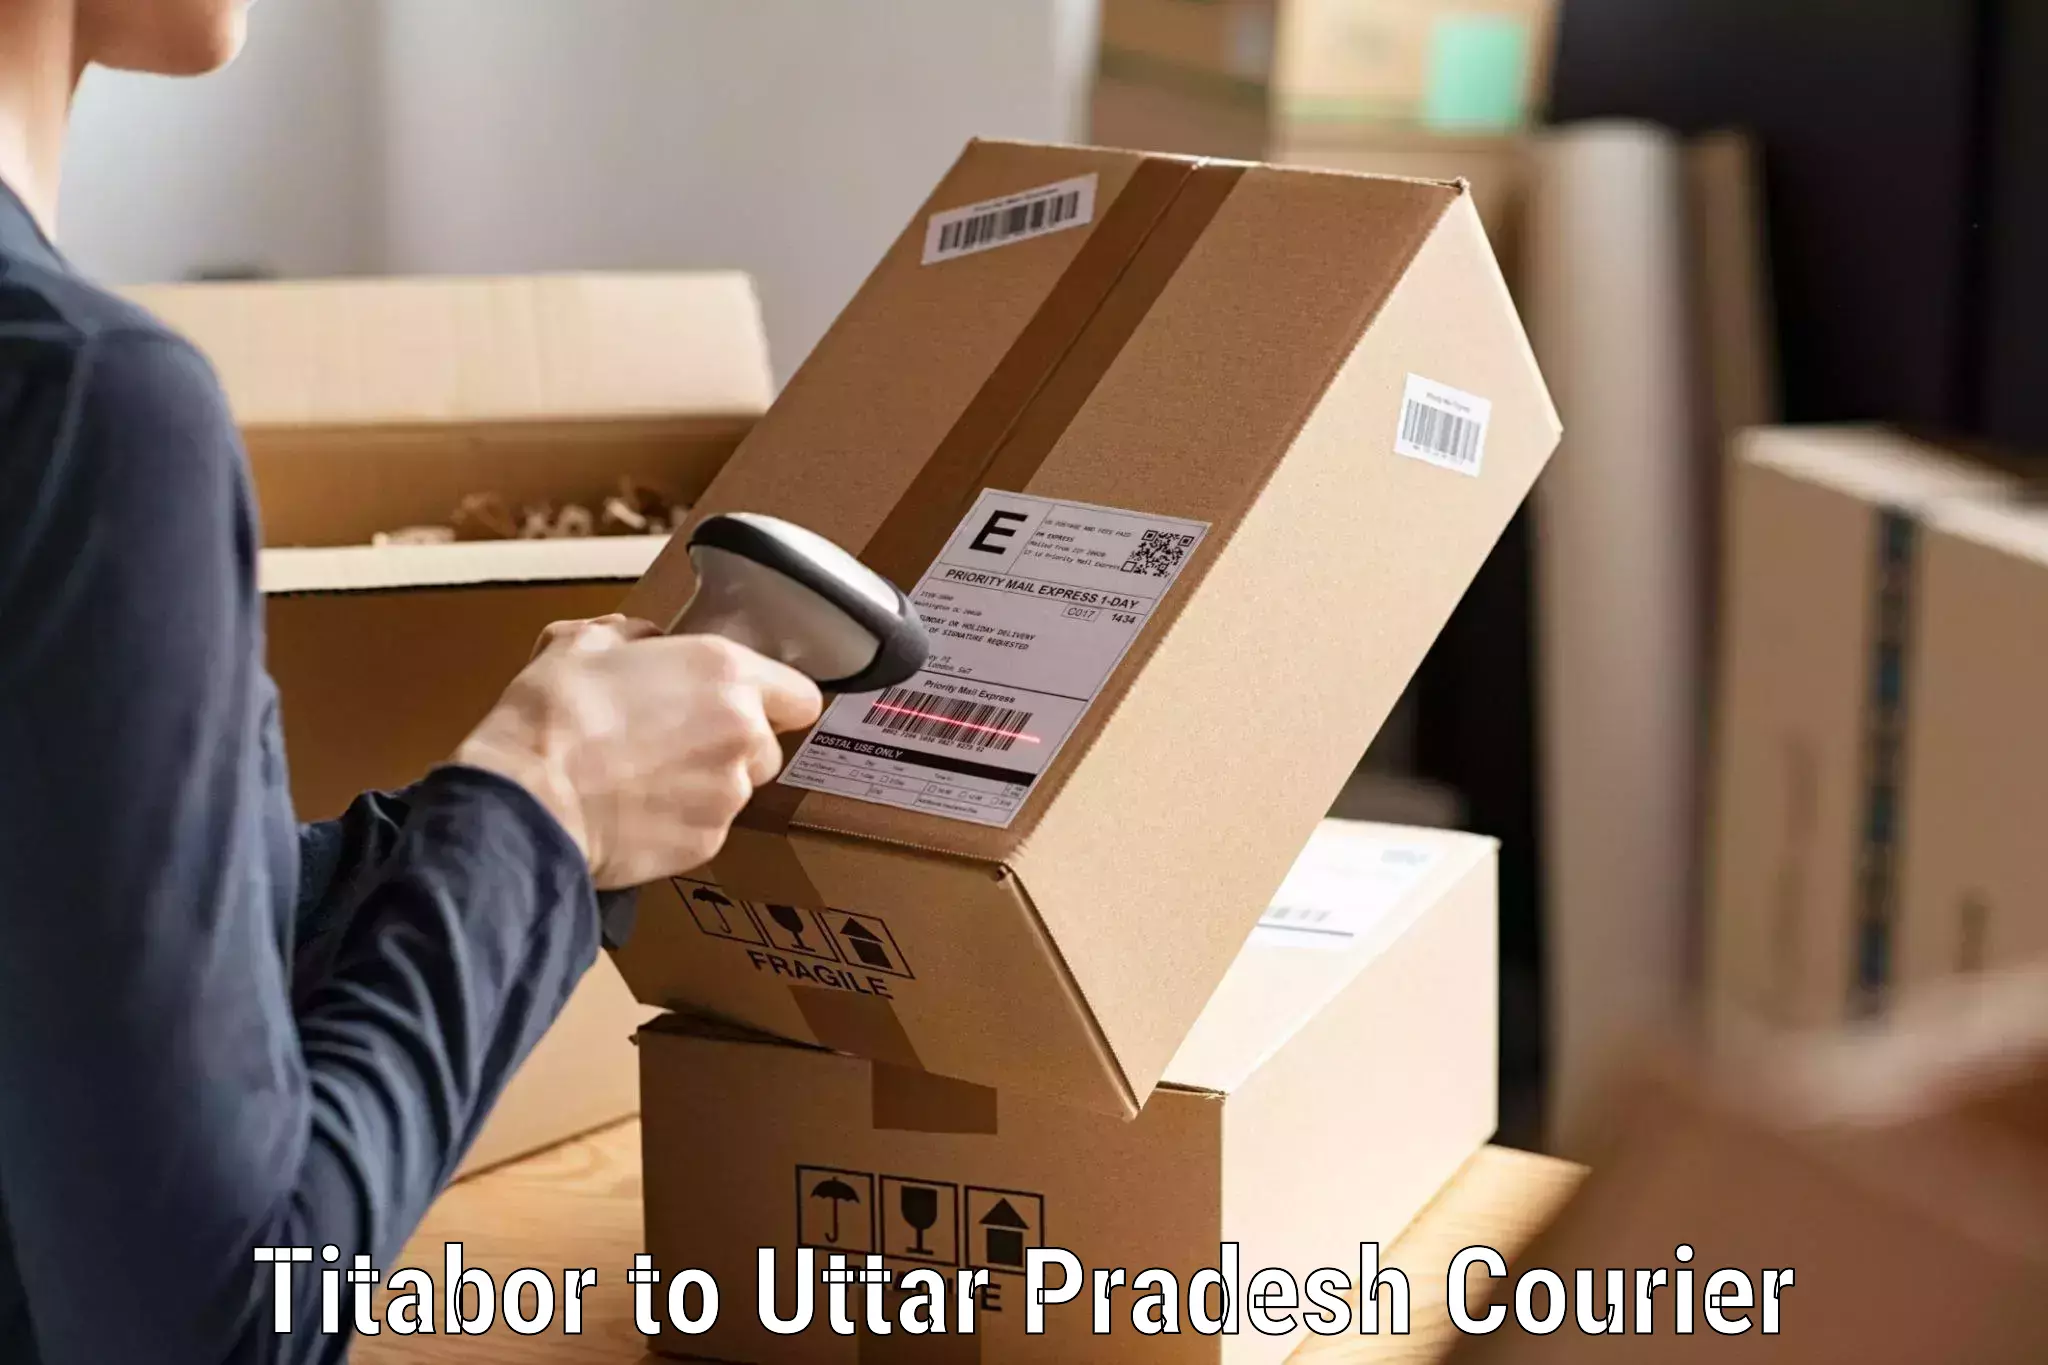 Global courier networks Titabor to Uttar Pradesh